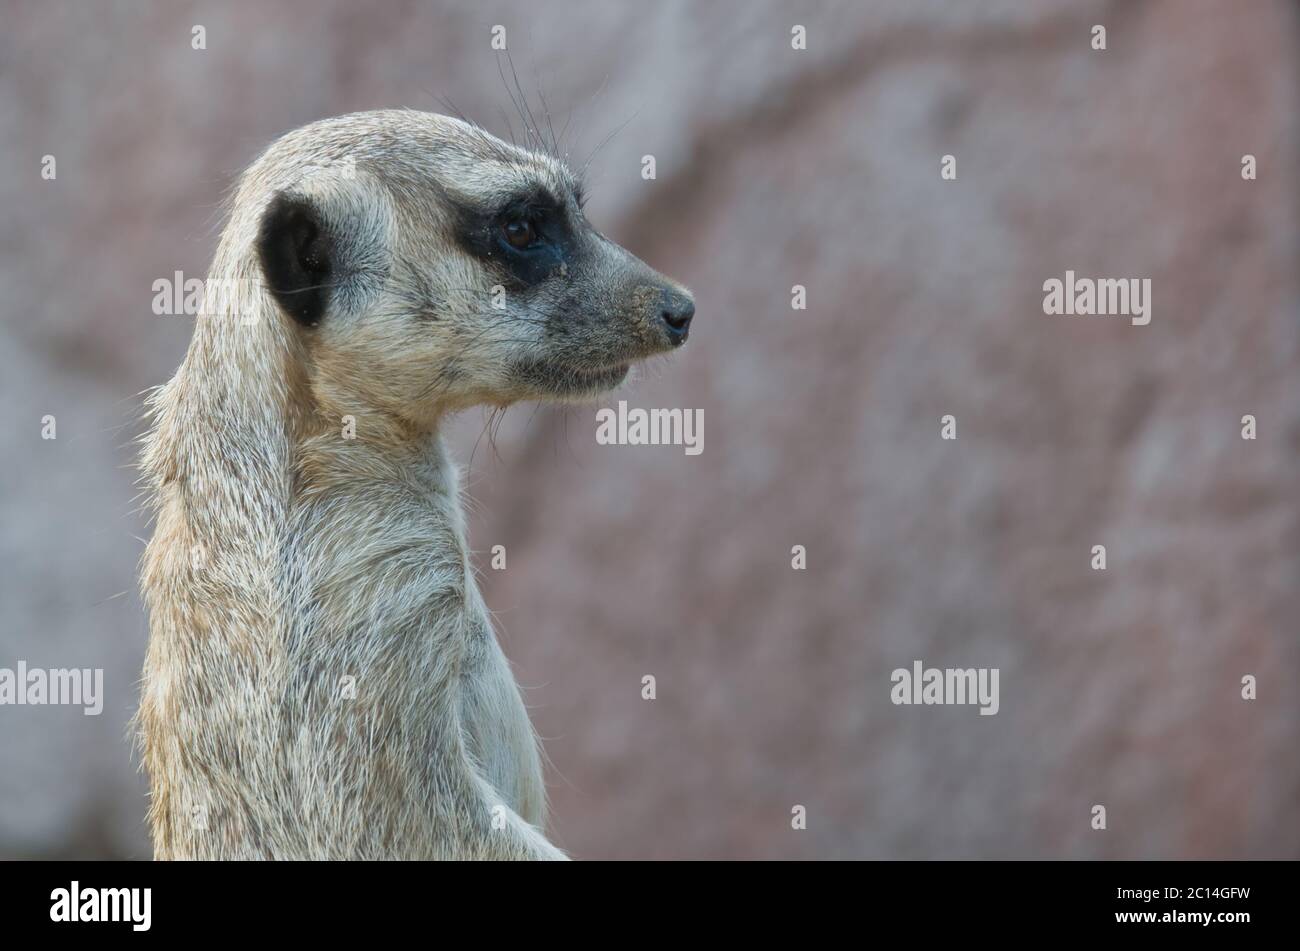 Primo piano di un meerkat guardando a destra. Spazio di copia Foto Stock